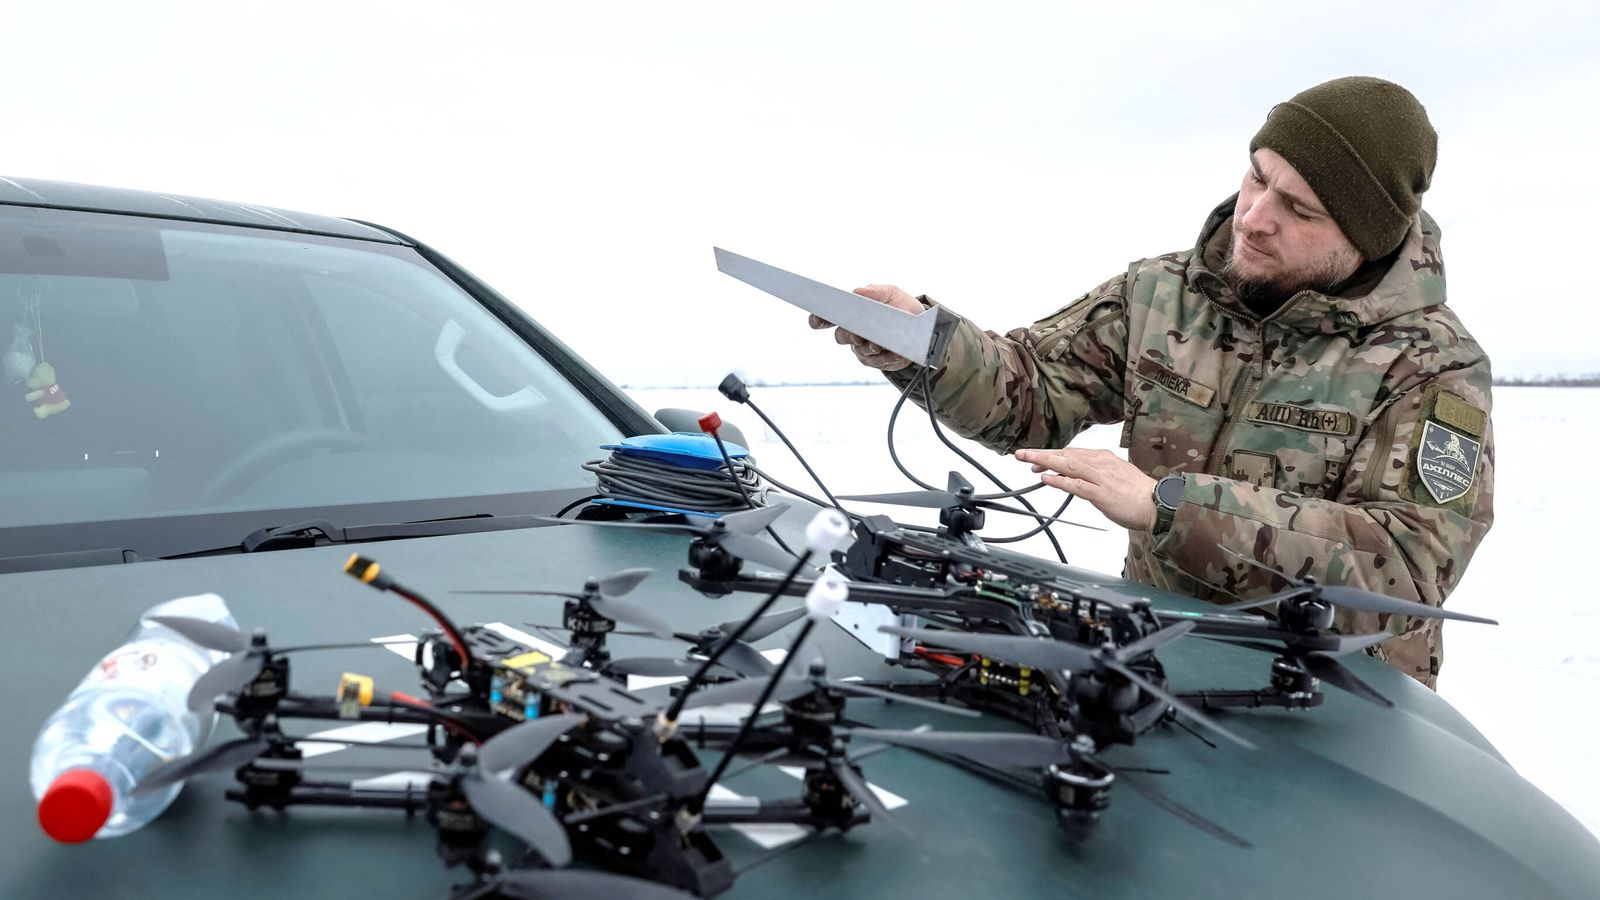 Обединеното кралство ще достави още 10 000 дрона на Украйна, обявява Грант Шапс